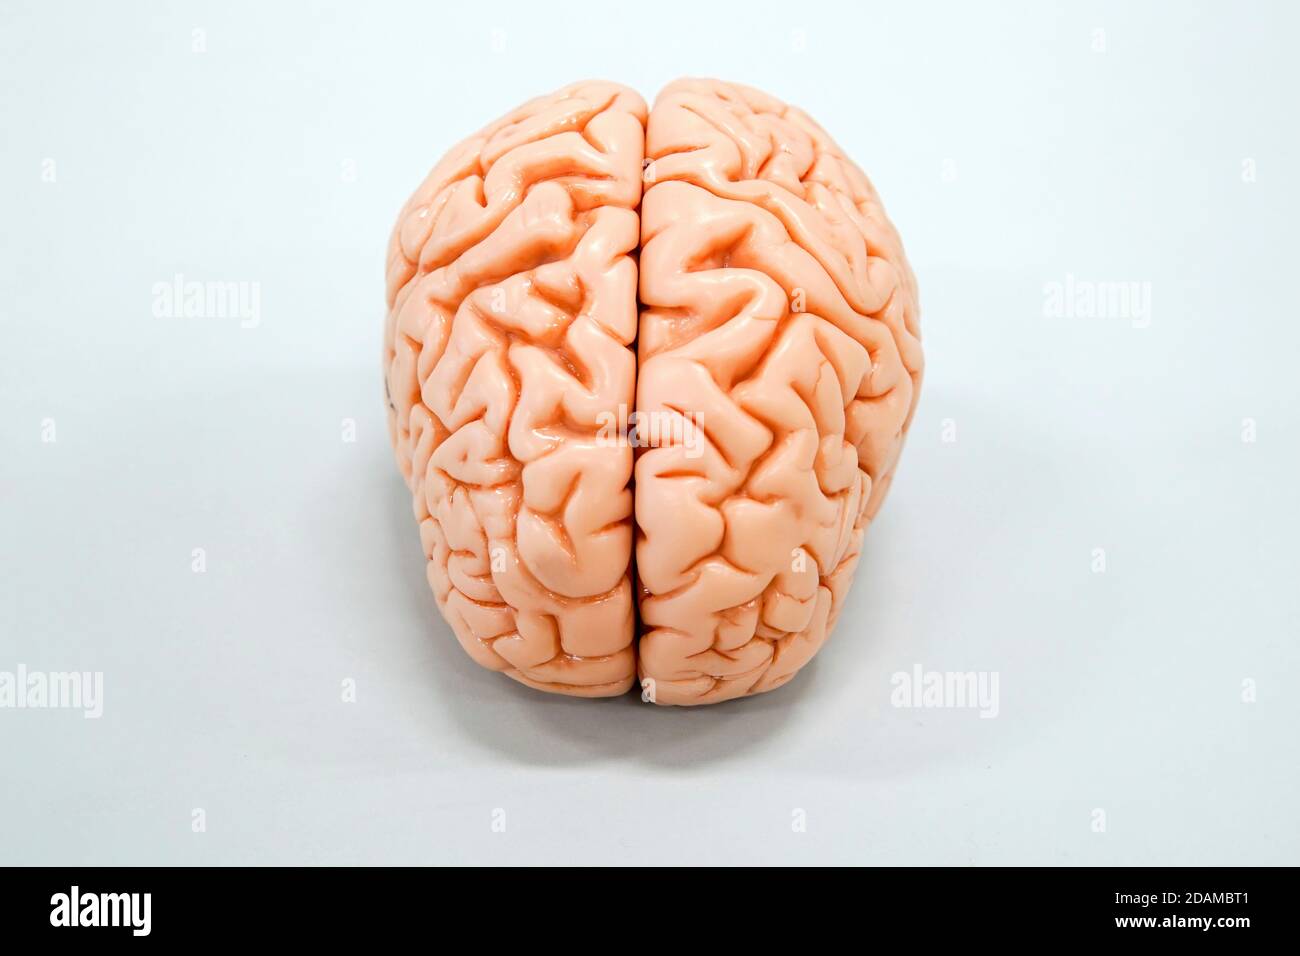 Modello anatomico cerebrale umano. Foto Stock